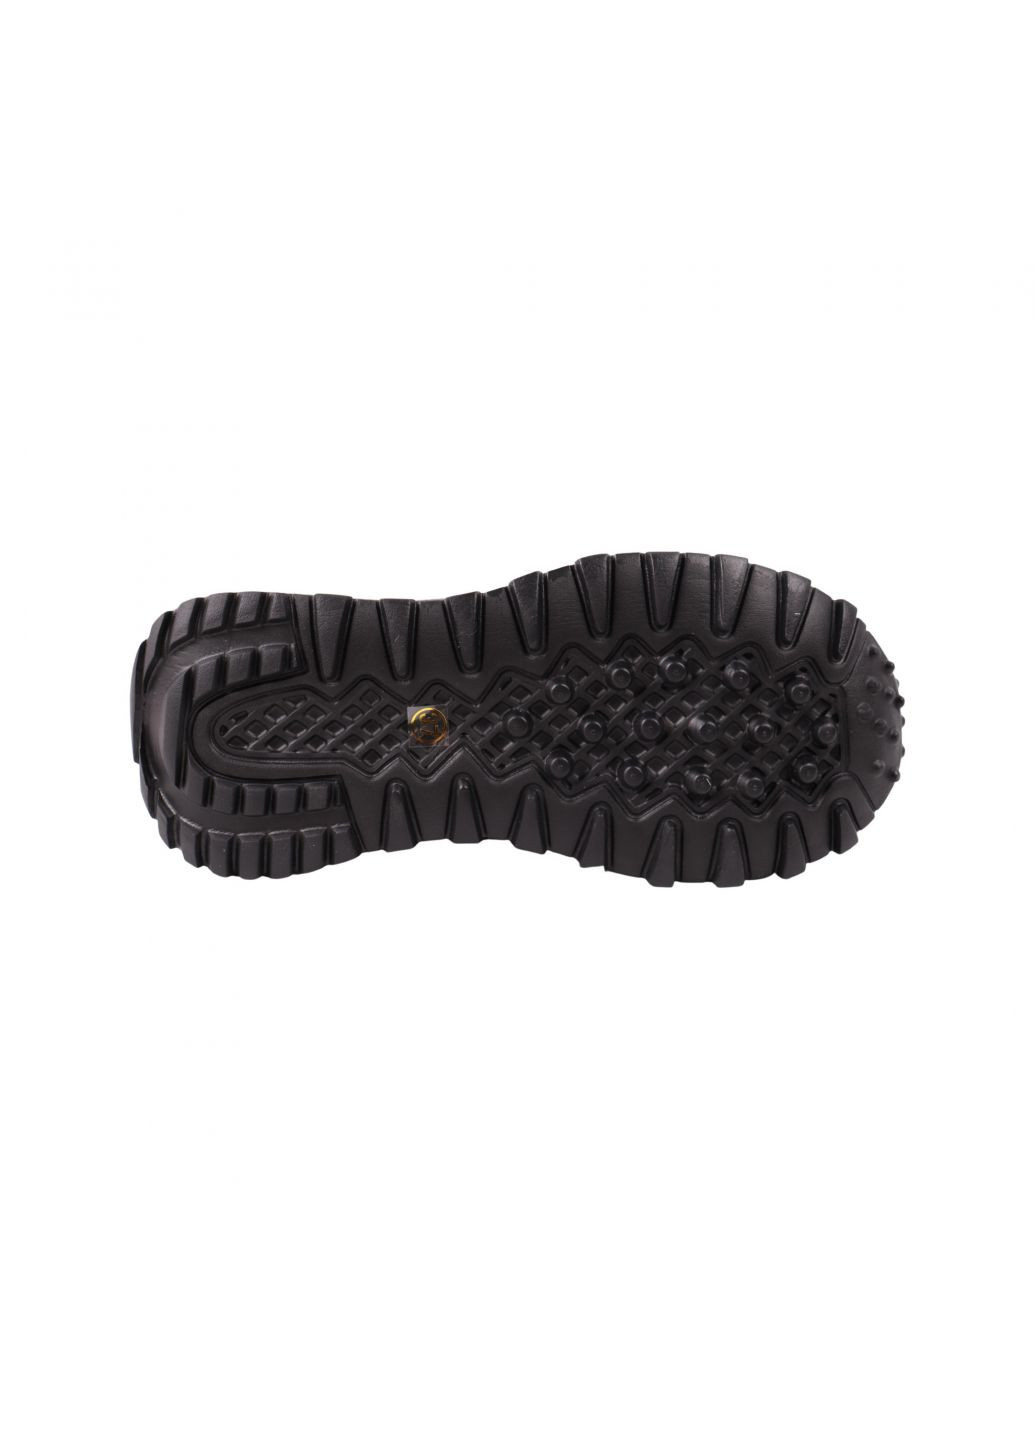 Черные кроссовки женские черные натуральная кожа Lifexpert 1409-23DK